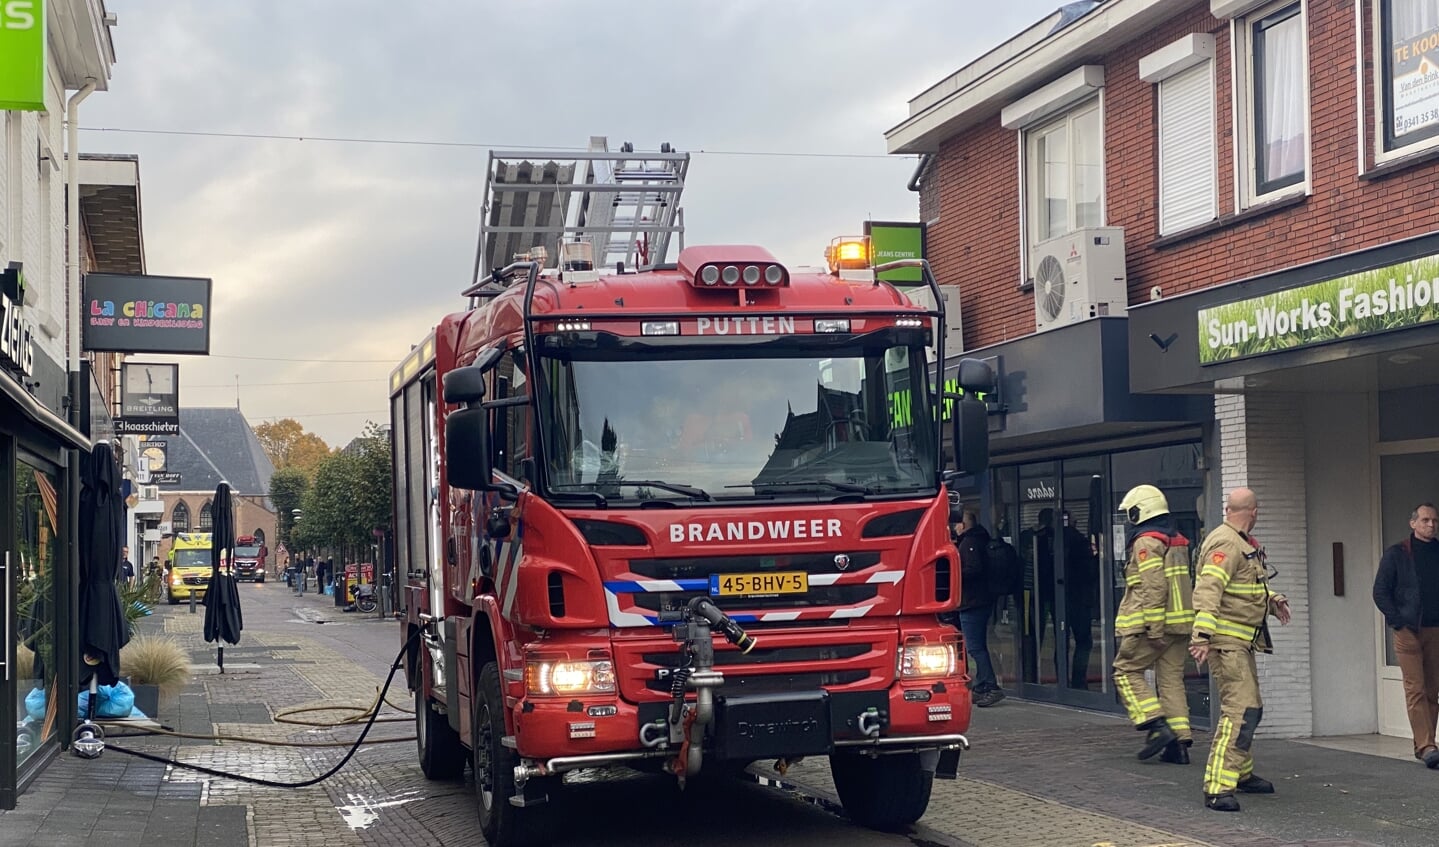 ze Phalanx Beeldhouwwerk Brandweer blust woningbrand in centrum van Putten - De Puttenaer | Nieuws  uit de regio Putten